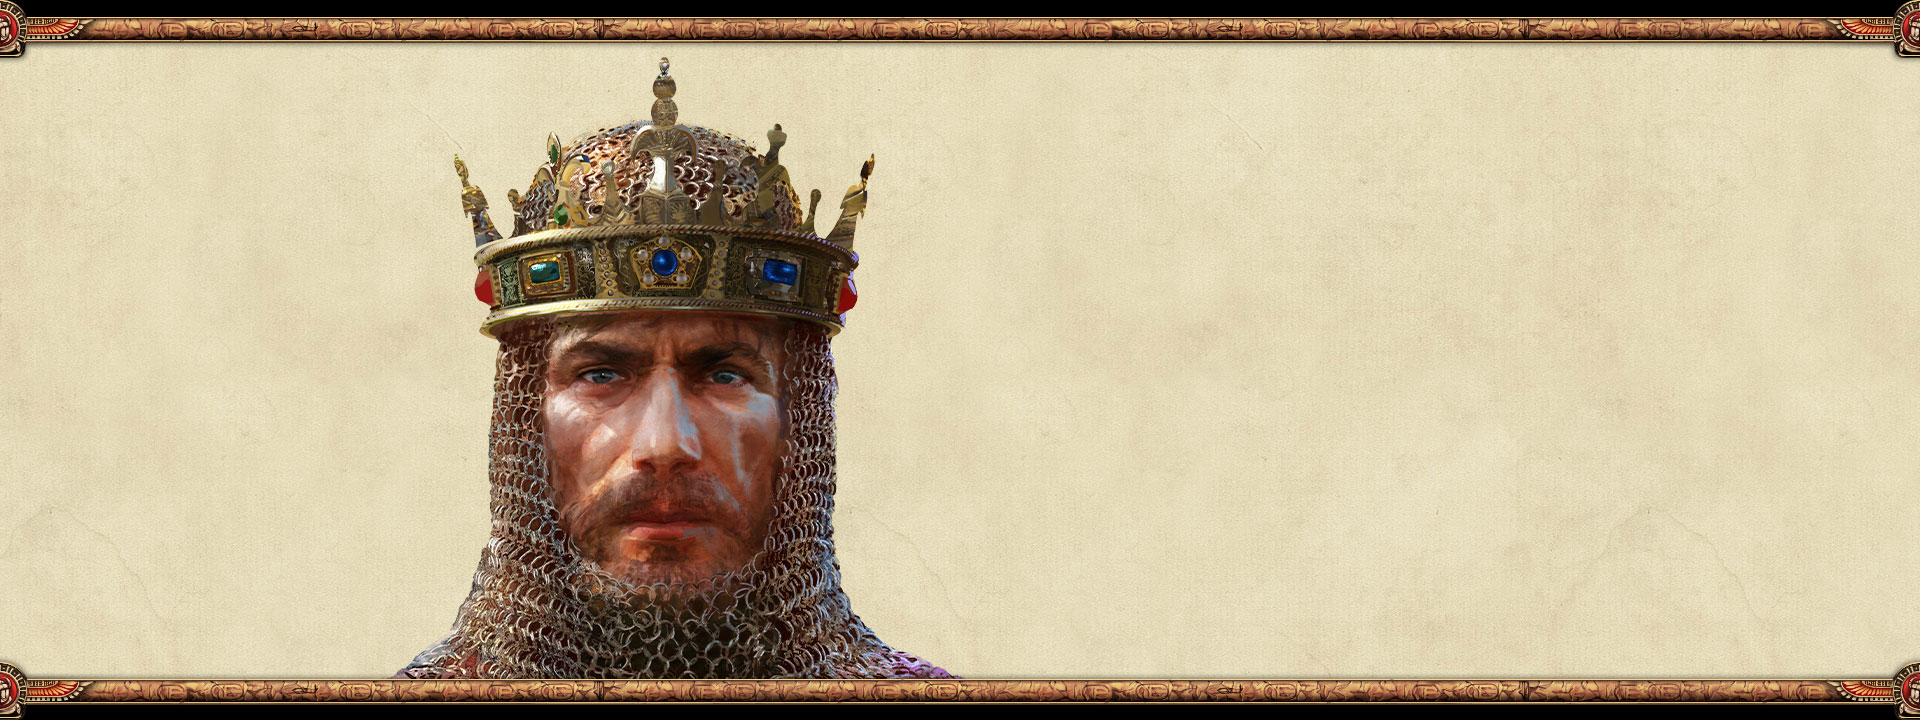 Der Herrscher eines Imperiums mit Kettenhemd und Krone